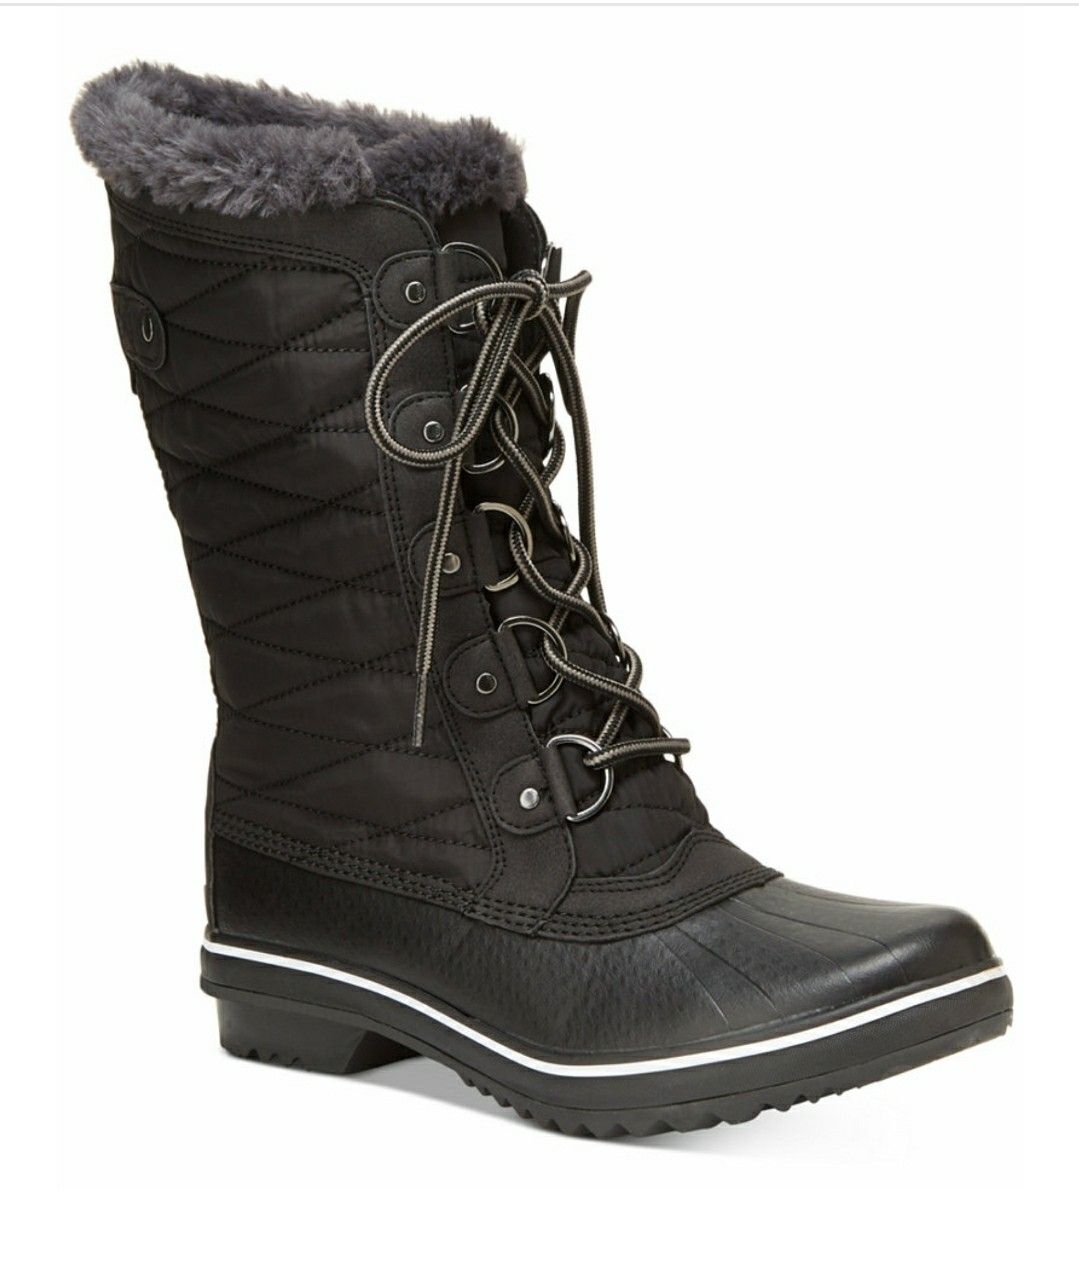 JBU Winter/Rain Boots